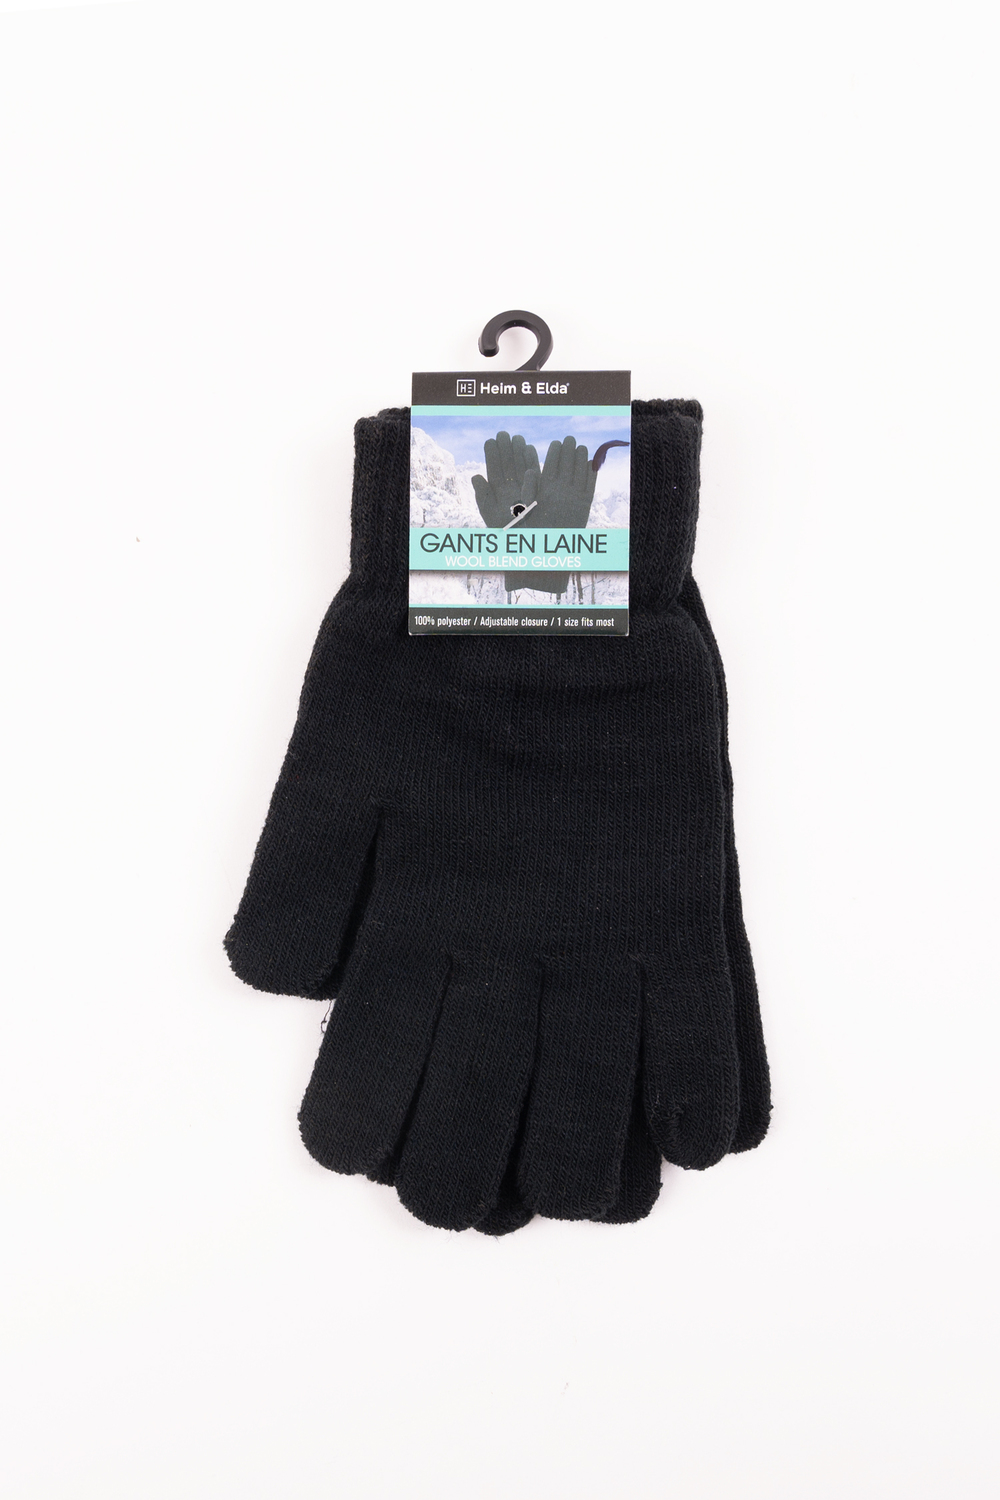 Heim & Elda - Wool blend magic gloves - Black